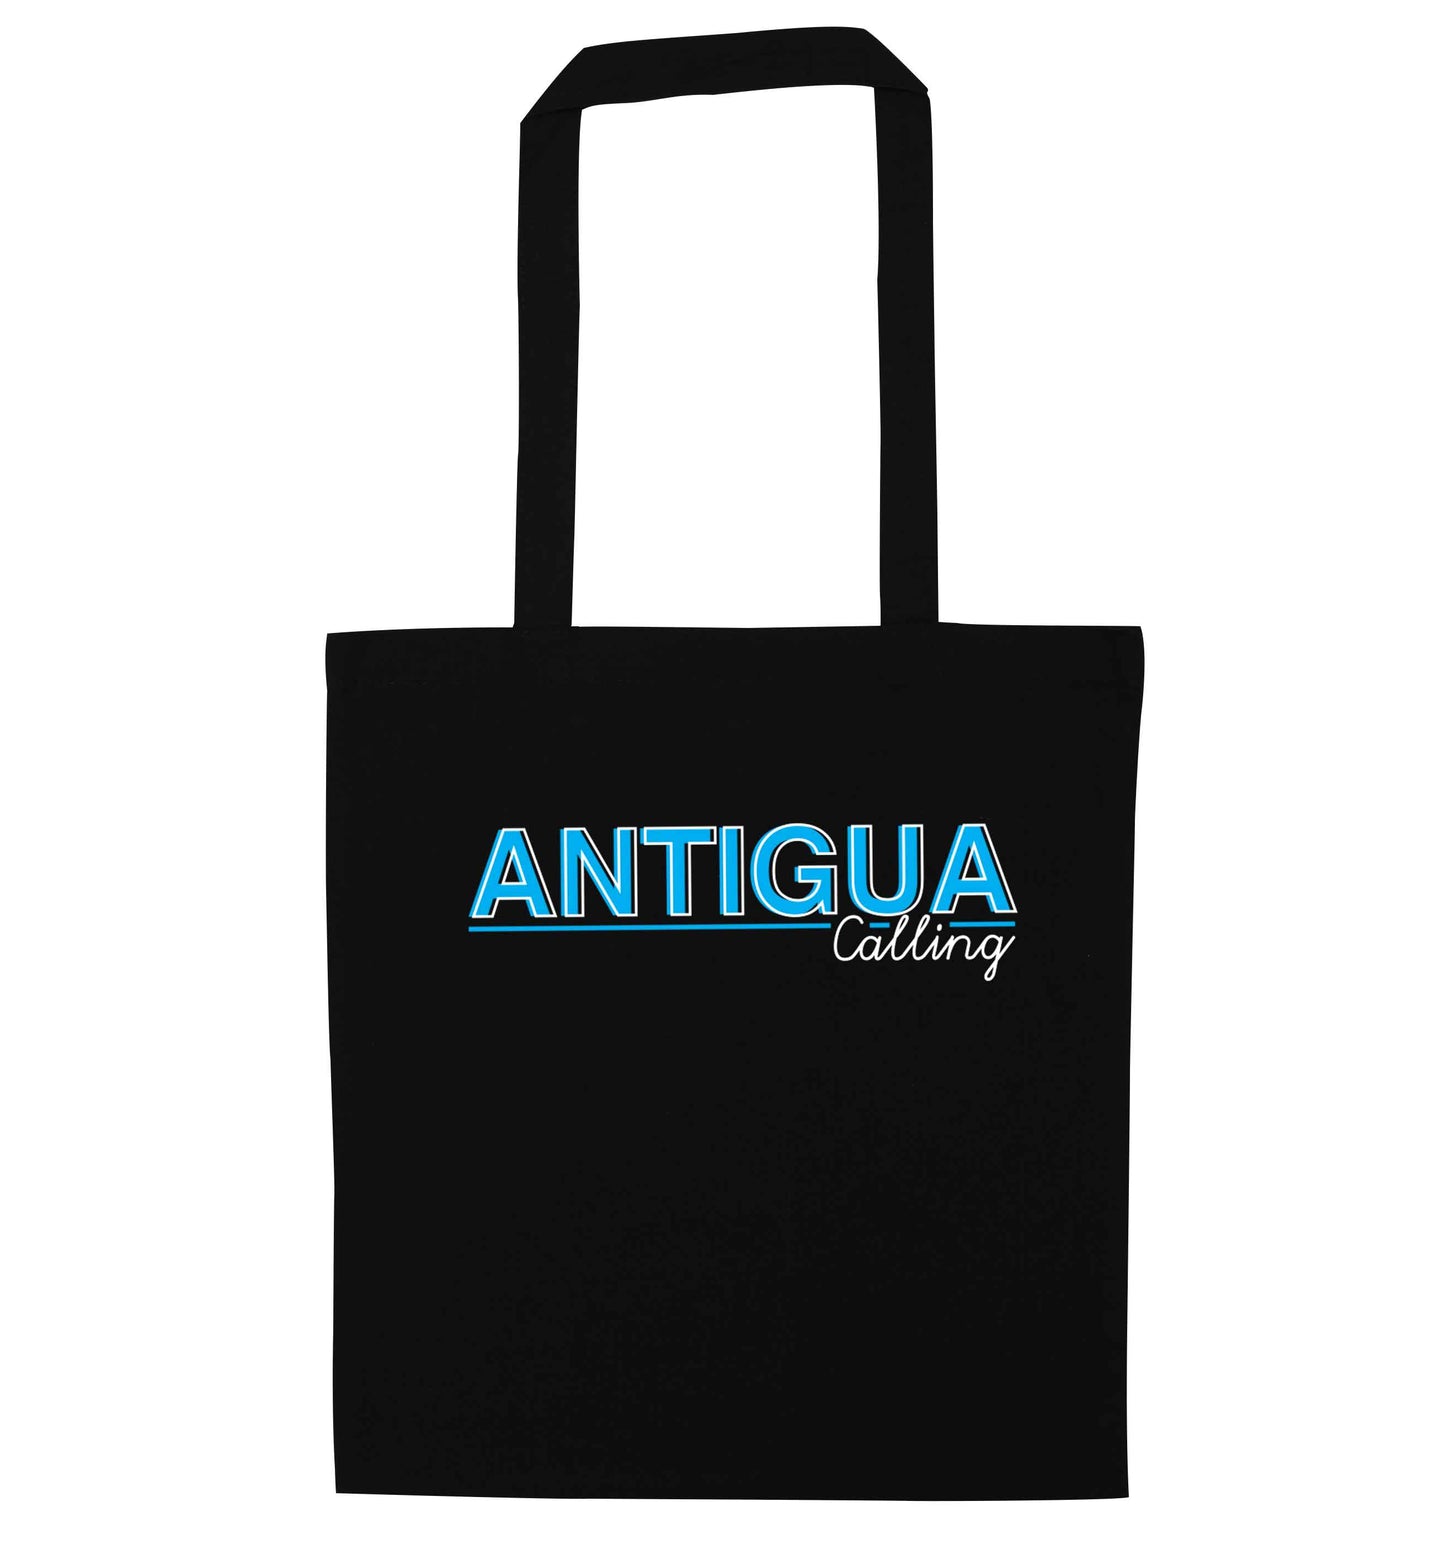 Antigua calling black tote bag